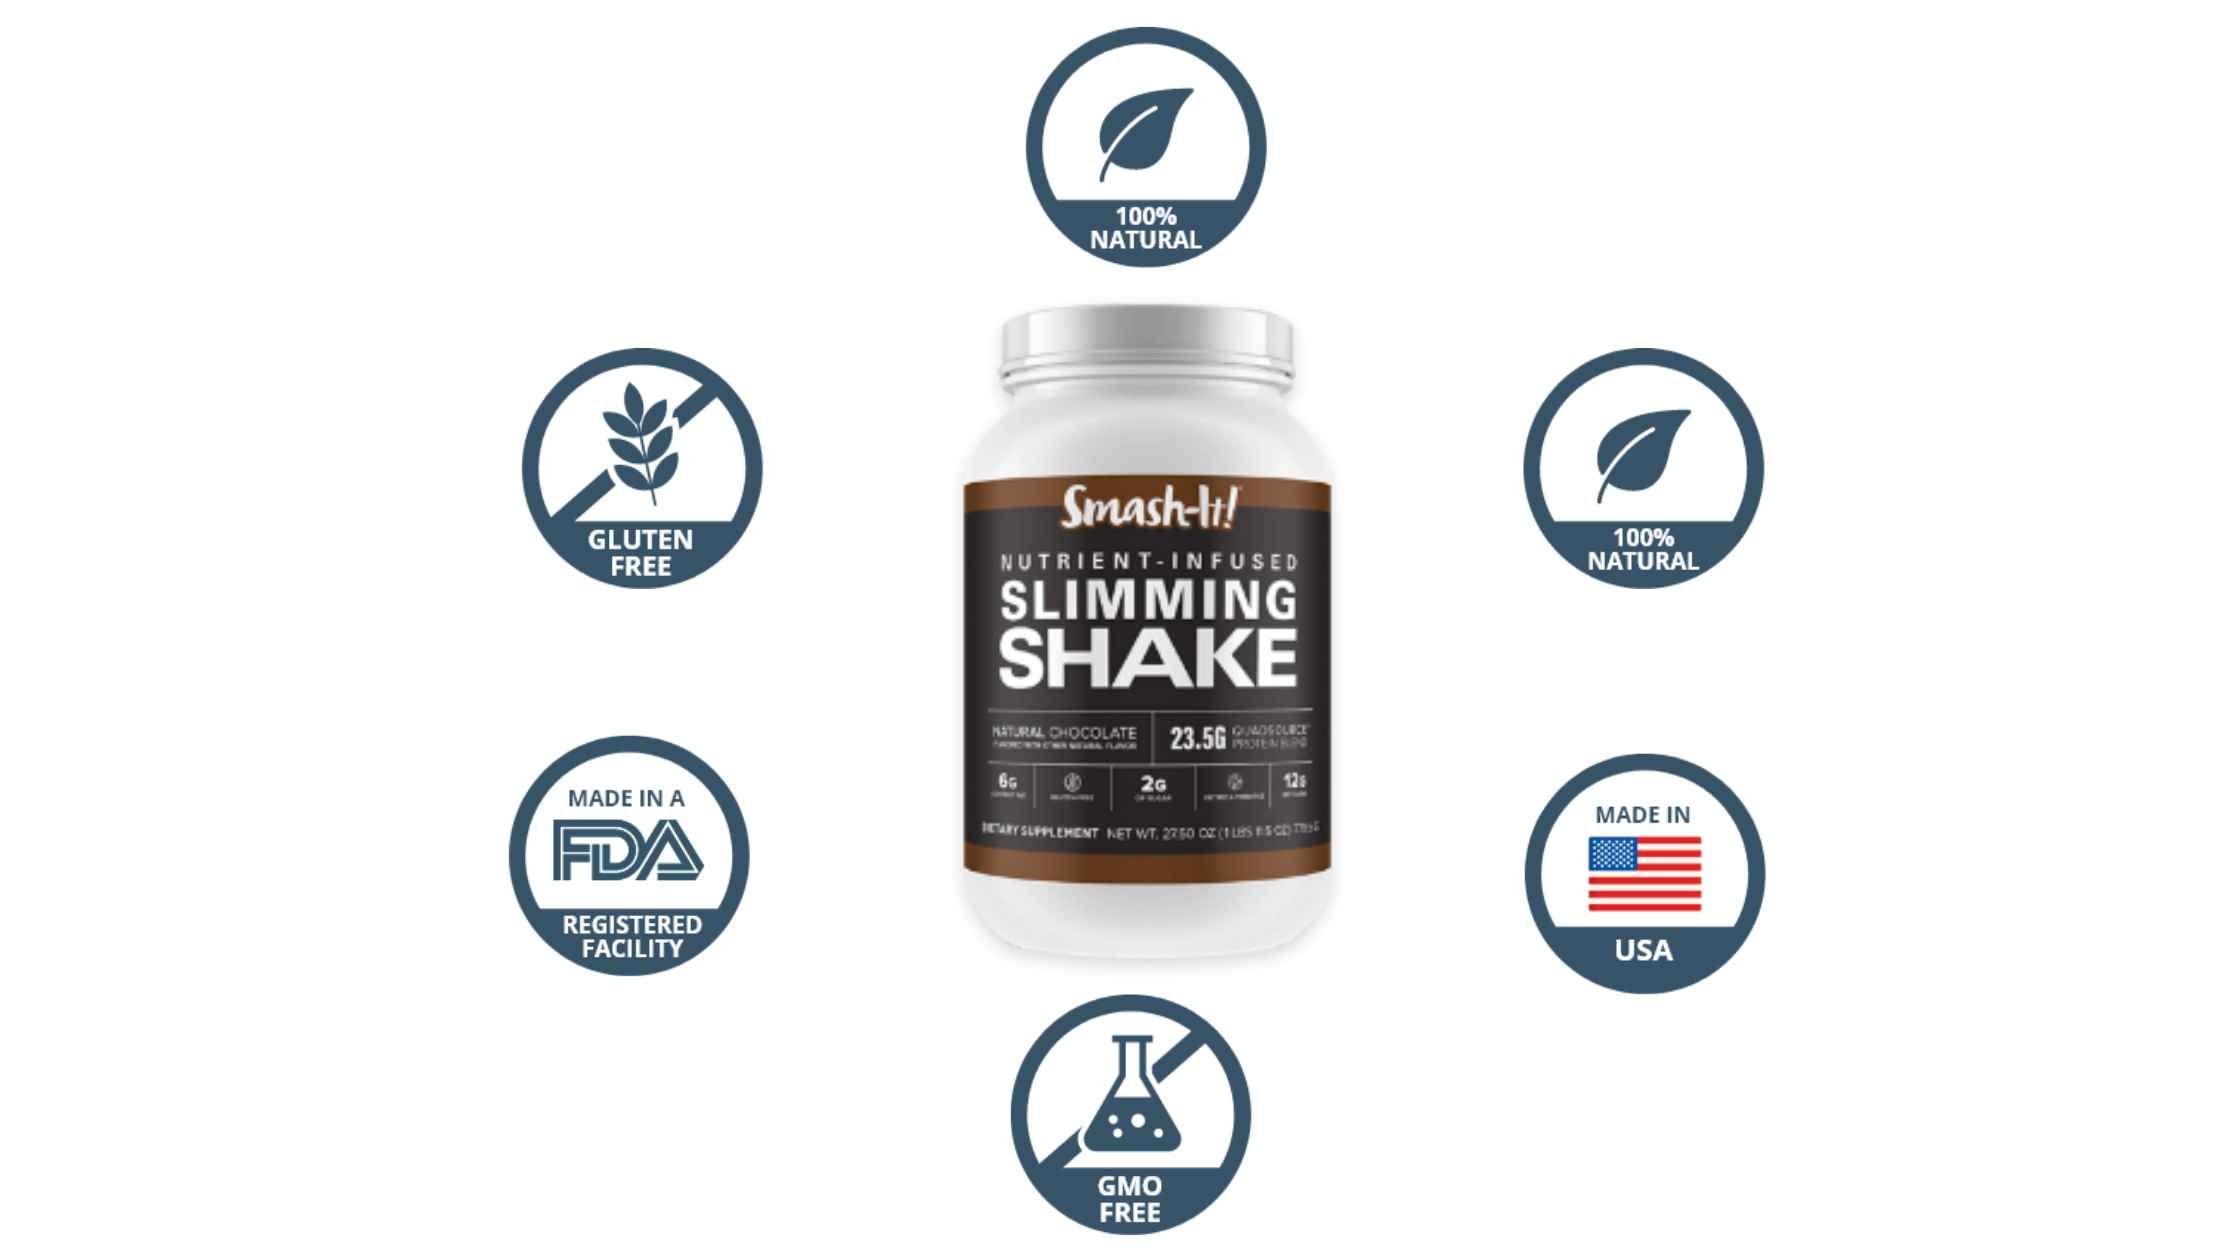 Smash-It! Slimming Shake benefits